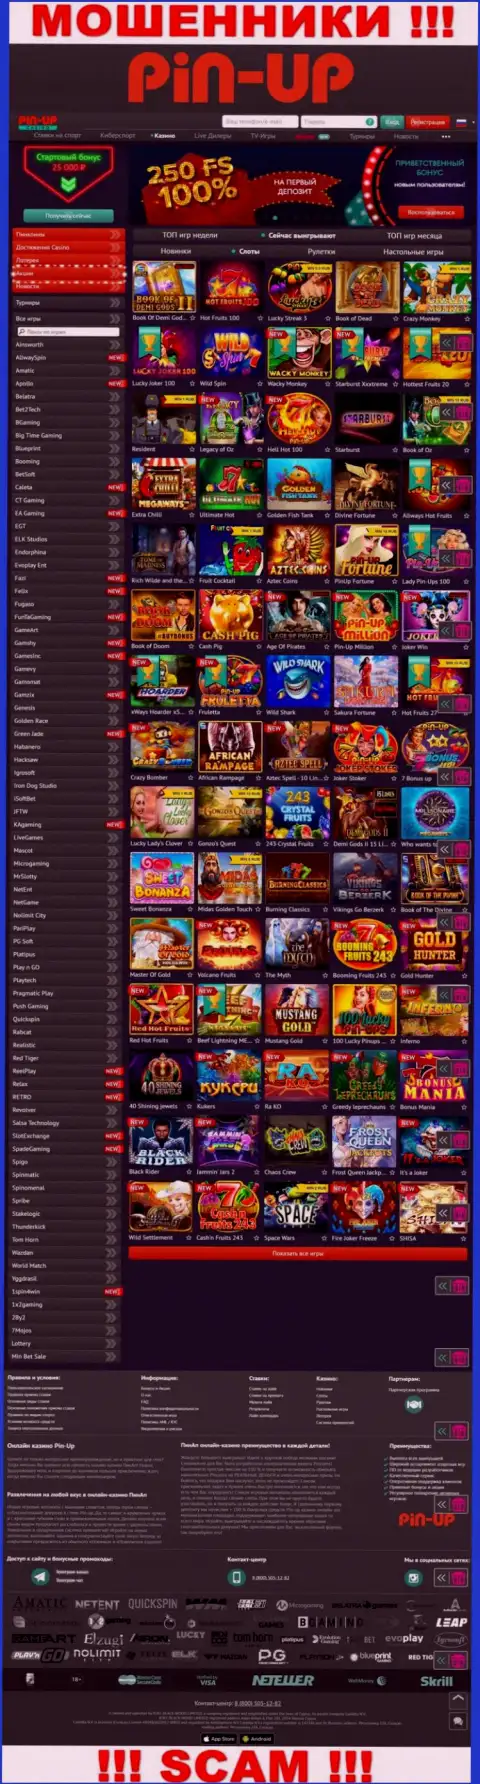 Pin-Up Casino - это официальный web-сайт жуликов Пин-Ап Казино